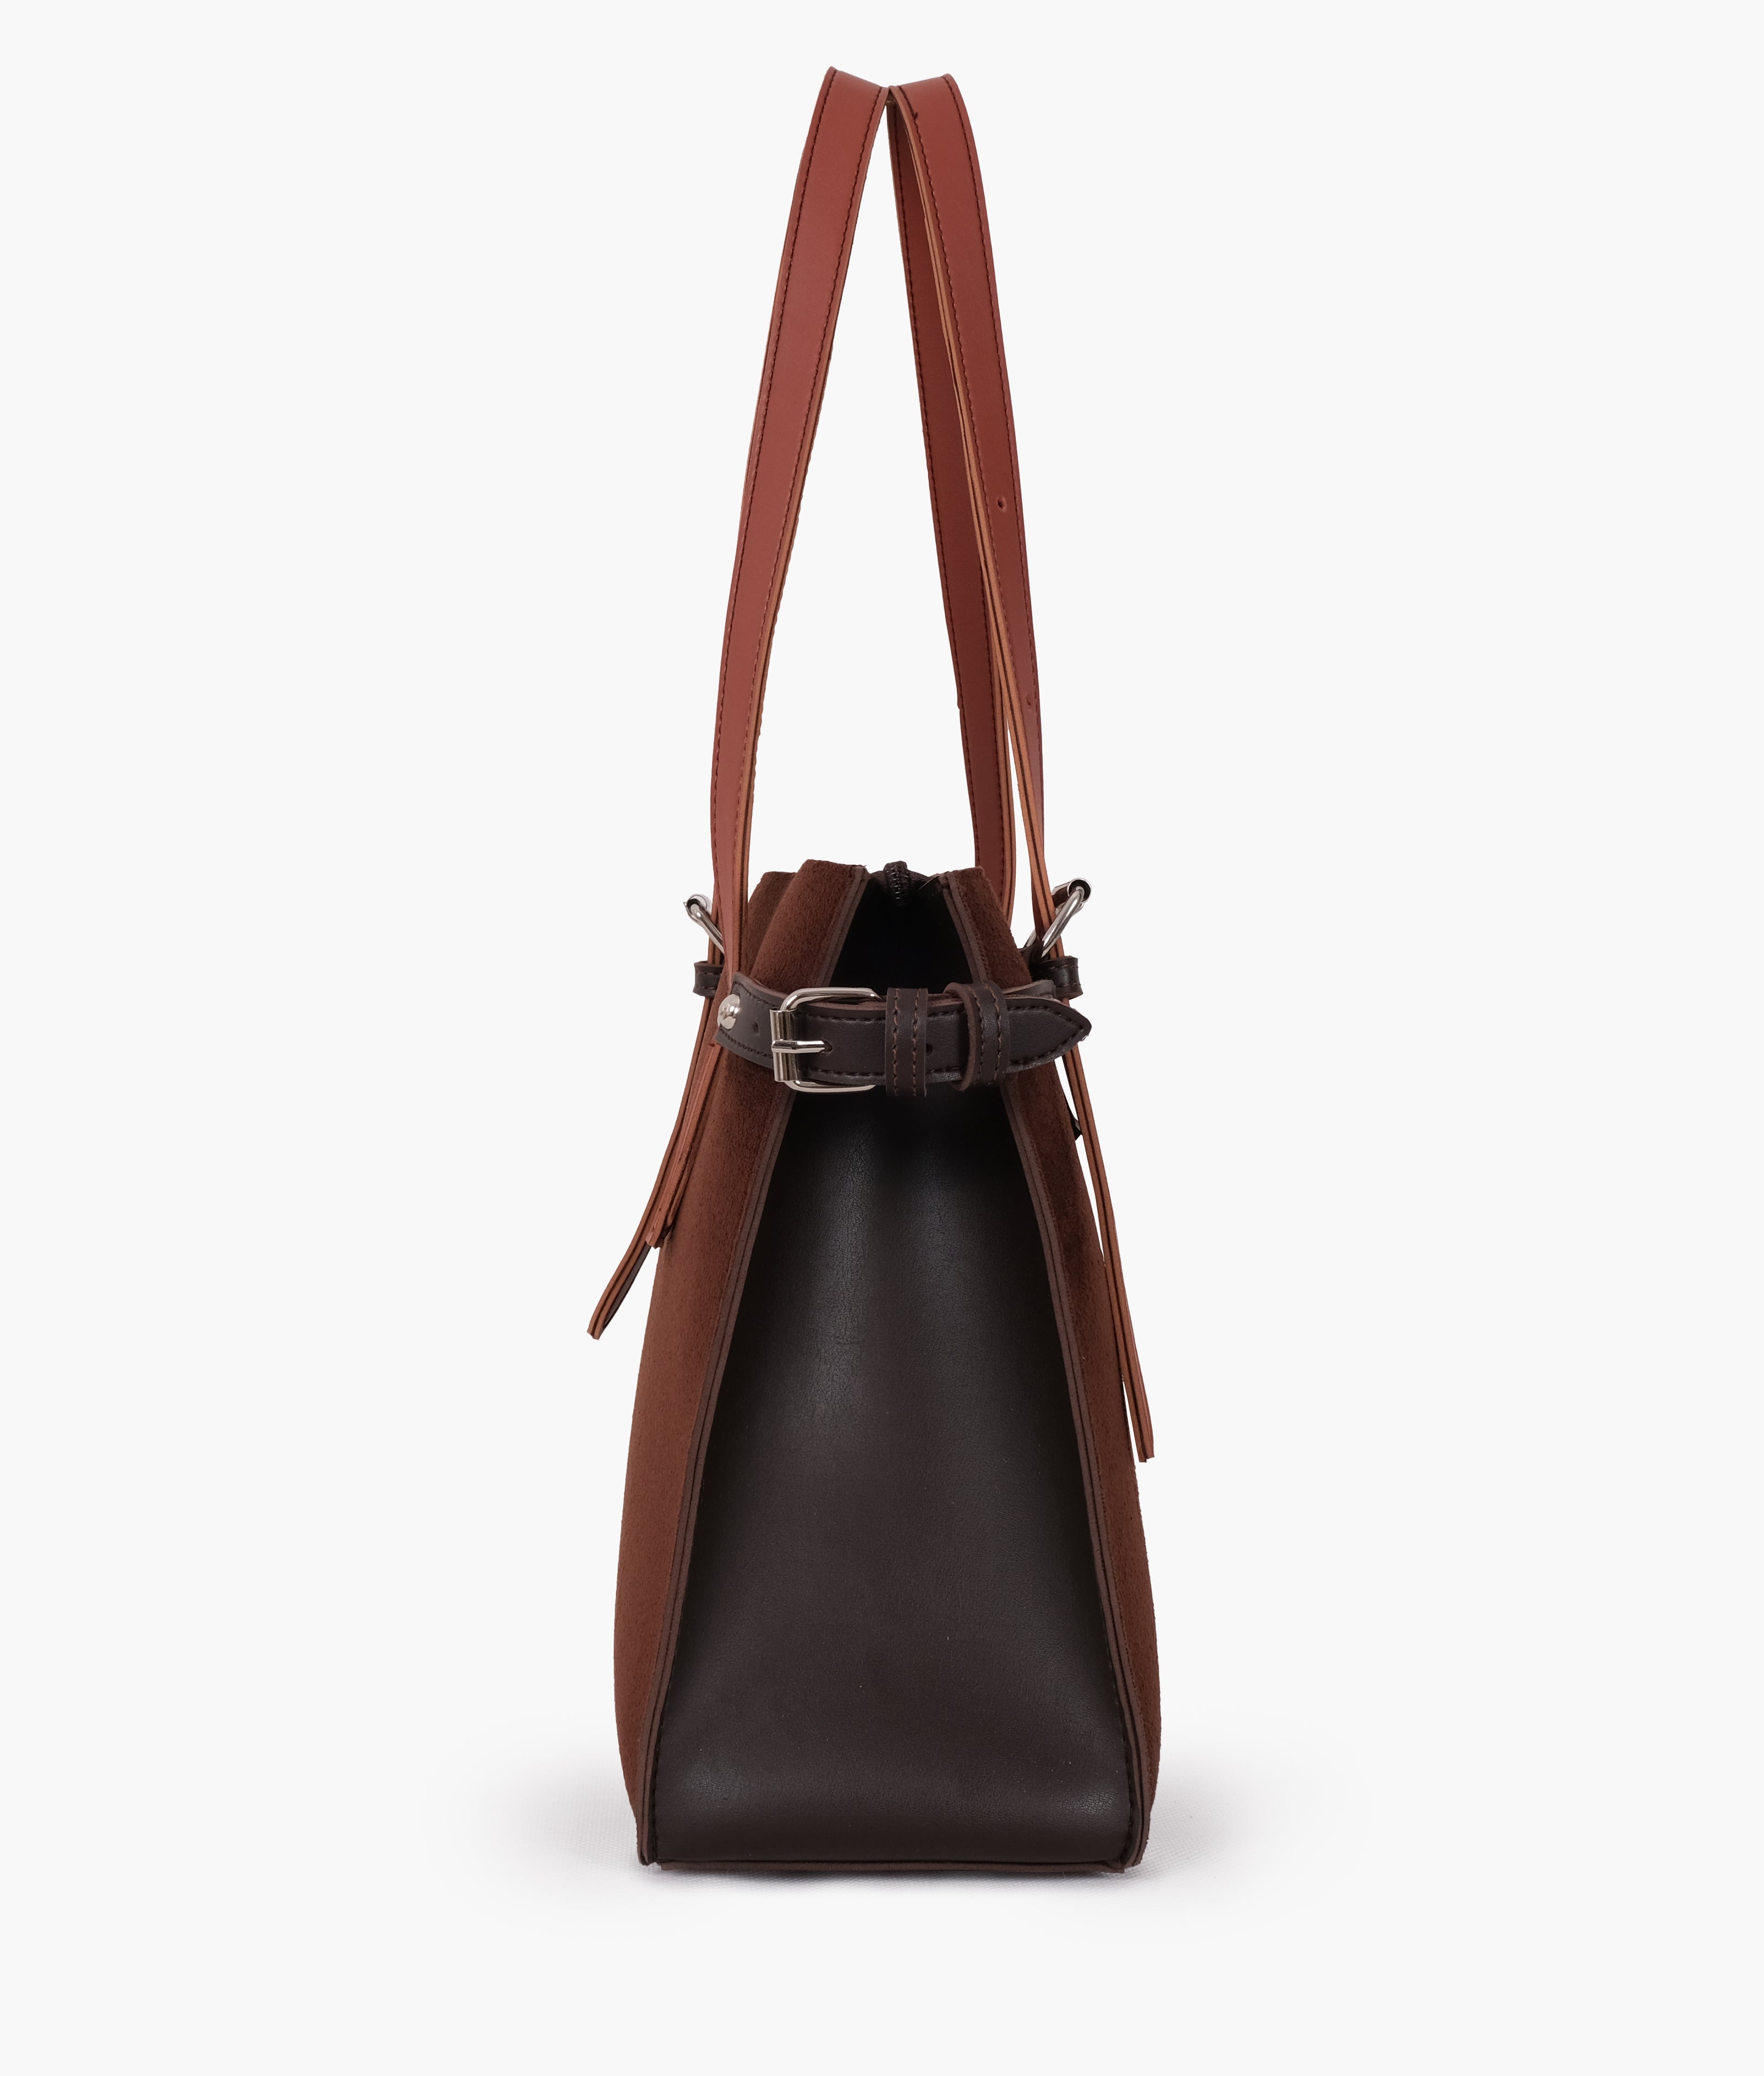 Dark brown suede satchel tote bag